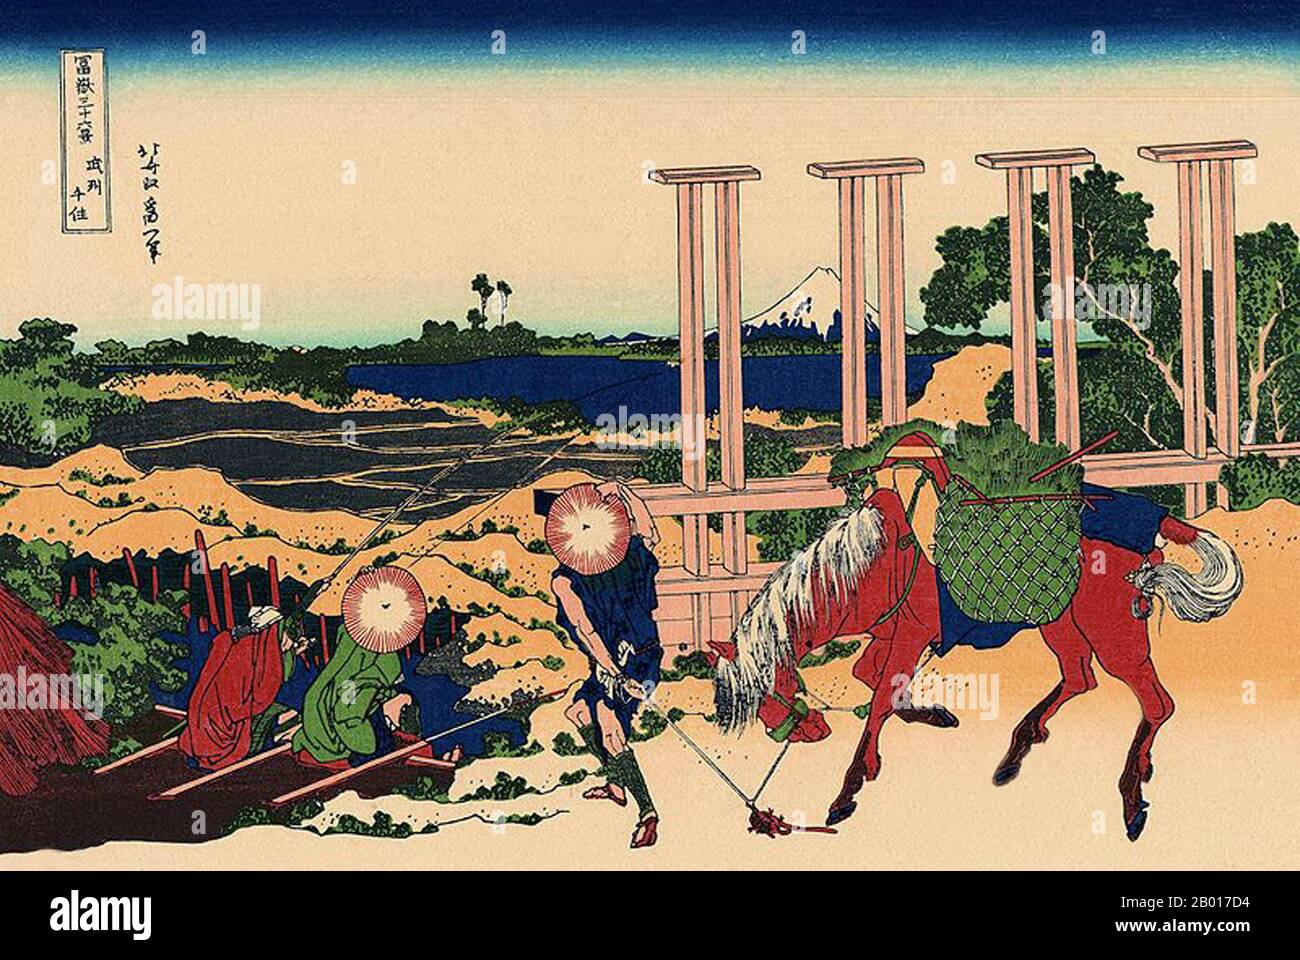 Japan: ‘Senju in der Provinz Musashi’. Ukiyo-e Holzschnitt aus der Serie ‘Thirty-Six views of Mount Fuji’ von Katsushika Hokusai (31. Oktober 1760 - 10. Mai 1849), 1830. ‘Thirty-Six Views of Mount Fuji’ ist eine Serie von Holzschnitten der japanischen Künstlerin Katsushika Hokusai, die „Sukiyo-e“ ‘. Die Serie zeigt den Fuji in unterschiedlichen Jahreszeiten und Wetterbedingungen an verschiedenen Orten und Entfernungen. Es besteht tatsächlich aus 46 Drucken, die zwischen 1826 und 1833 entstanden sind. Die ersten 36 wurden in die Originalpublikation aufgenommen, und aufgrund ihrer Popularität wurden nach der Originalpublikation 10 weitere hinzugefügt. Stockfoto